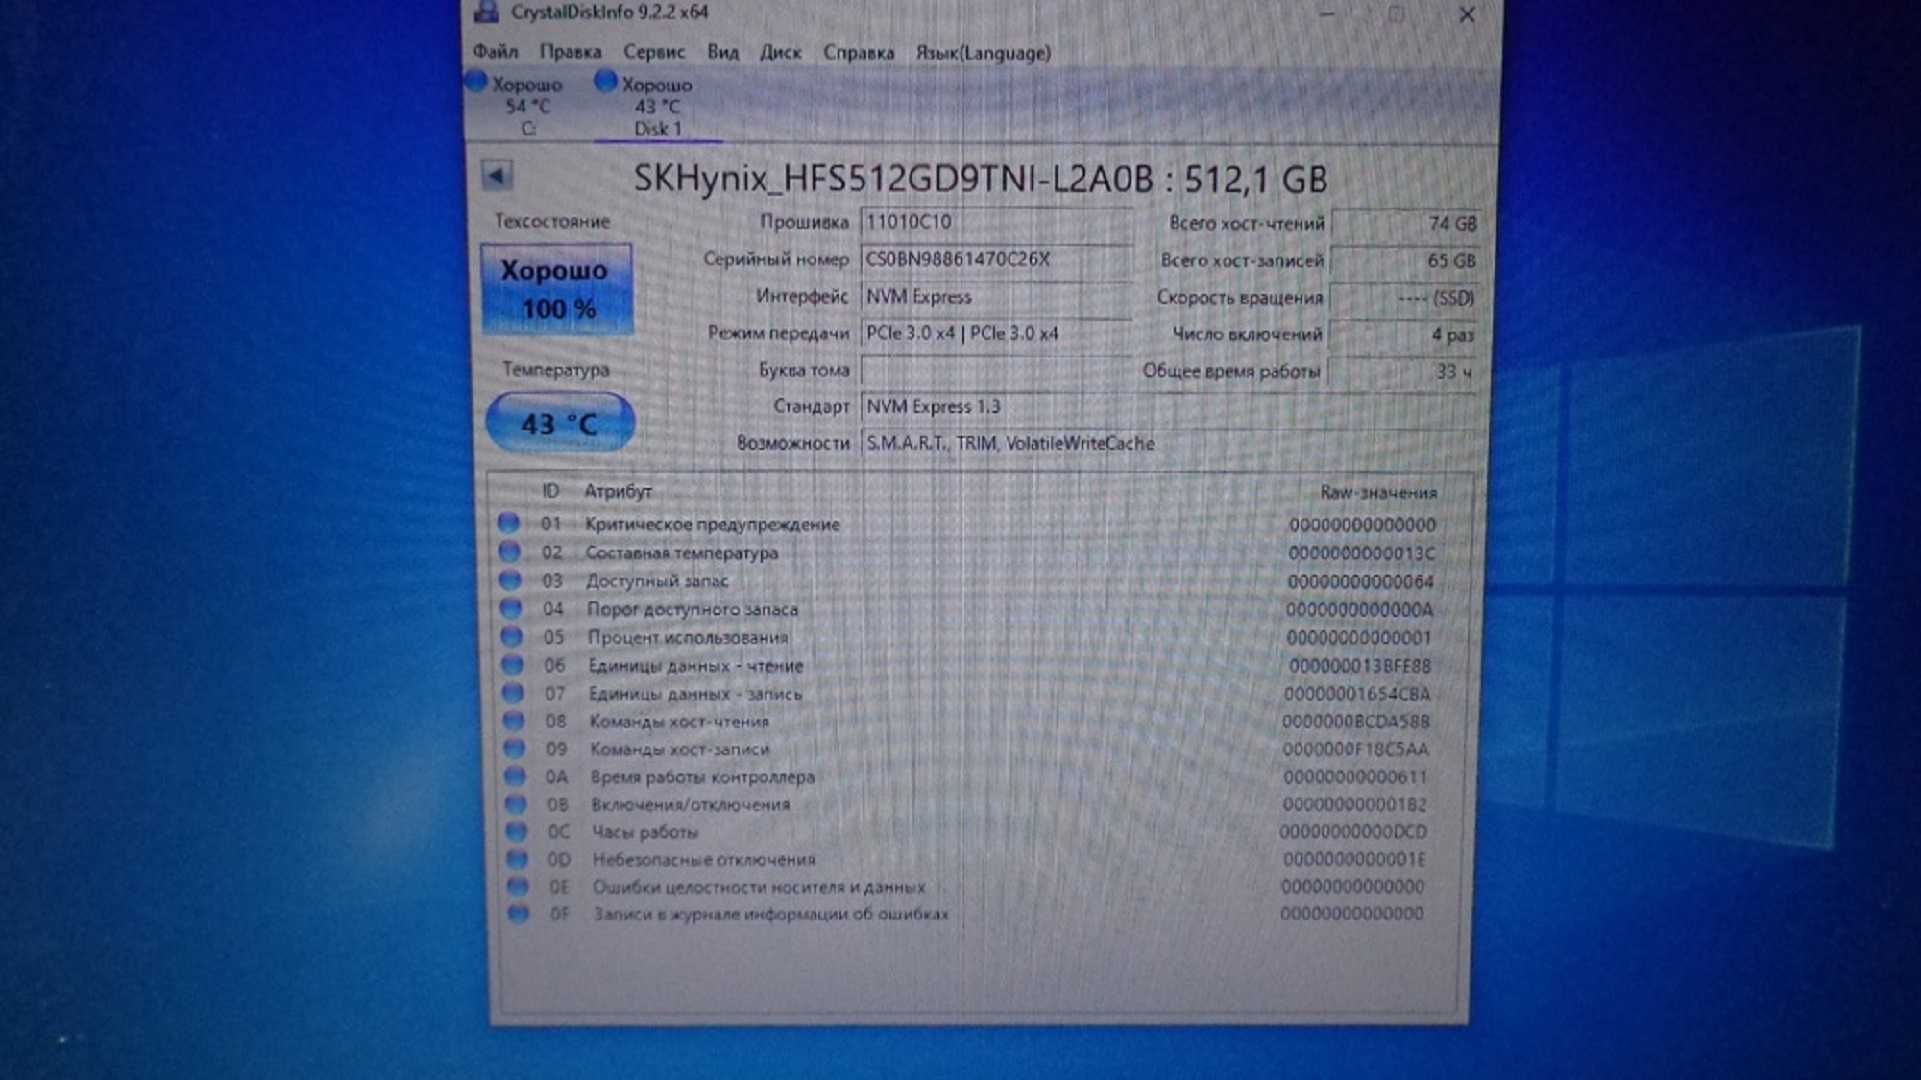 SSD SK hynix 512GB PC611 NVMe Gen3 M.2 2280 NVMe PCIe 3.0x4